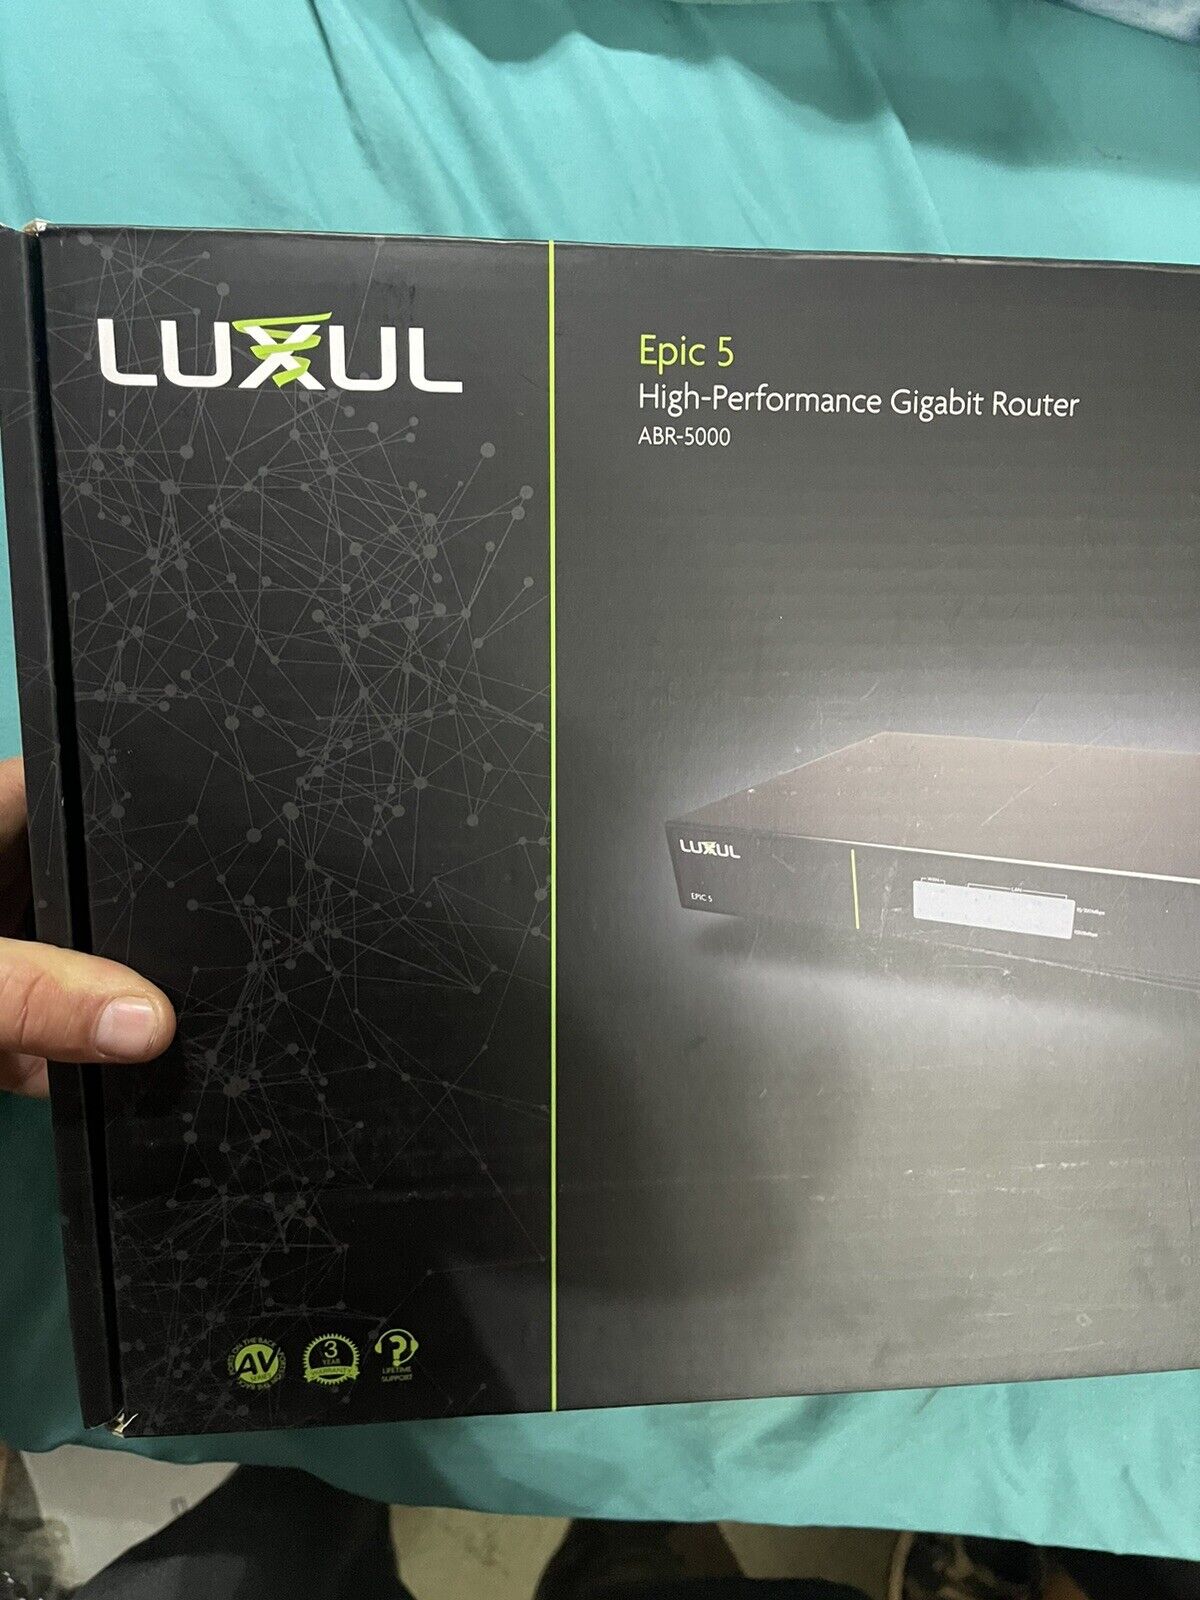 Luxul Epic 5 High-Performance Gigabit Router ABR-5000 